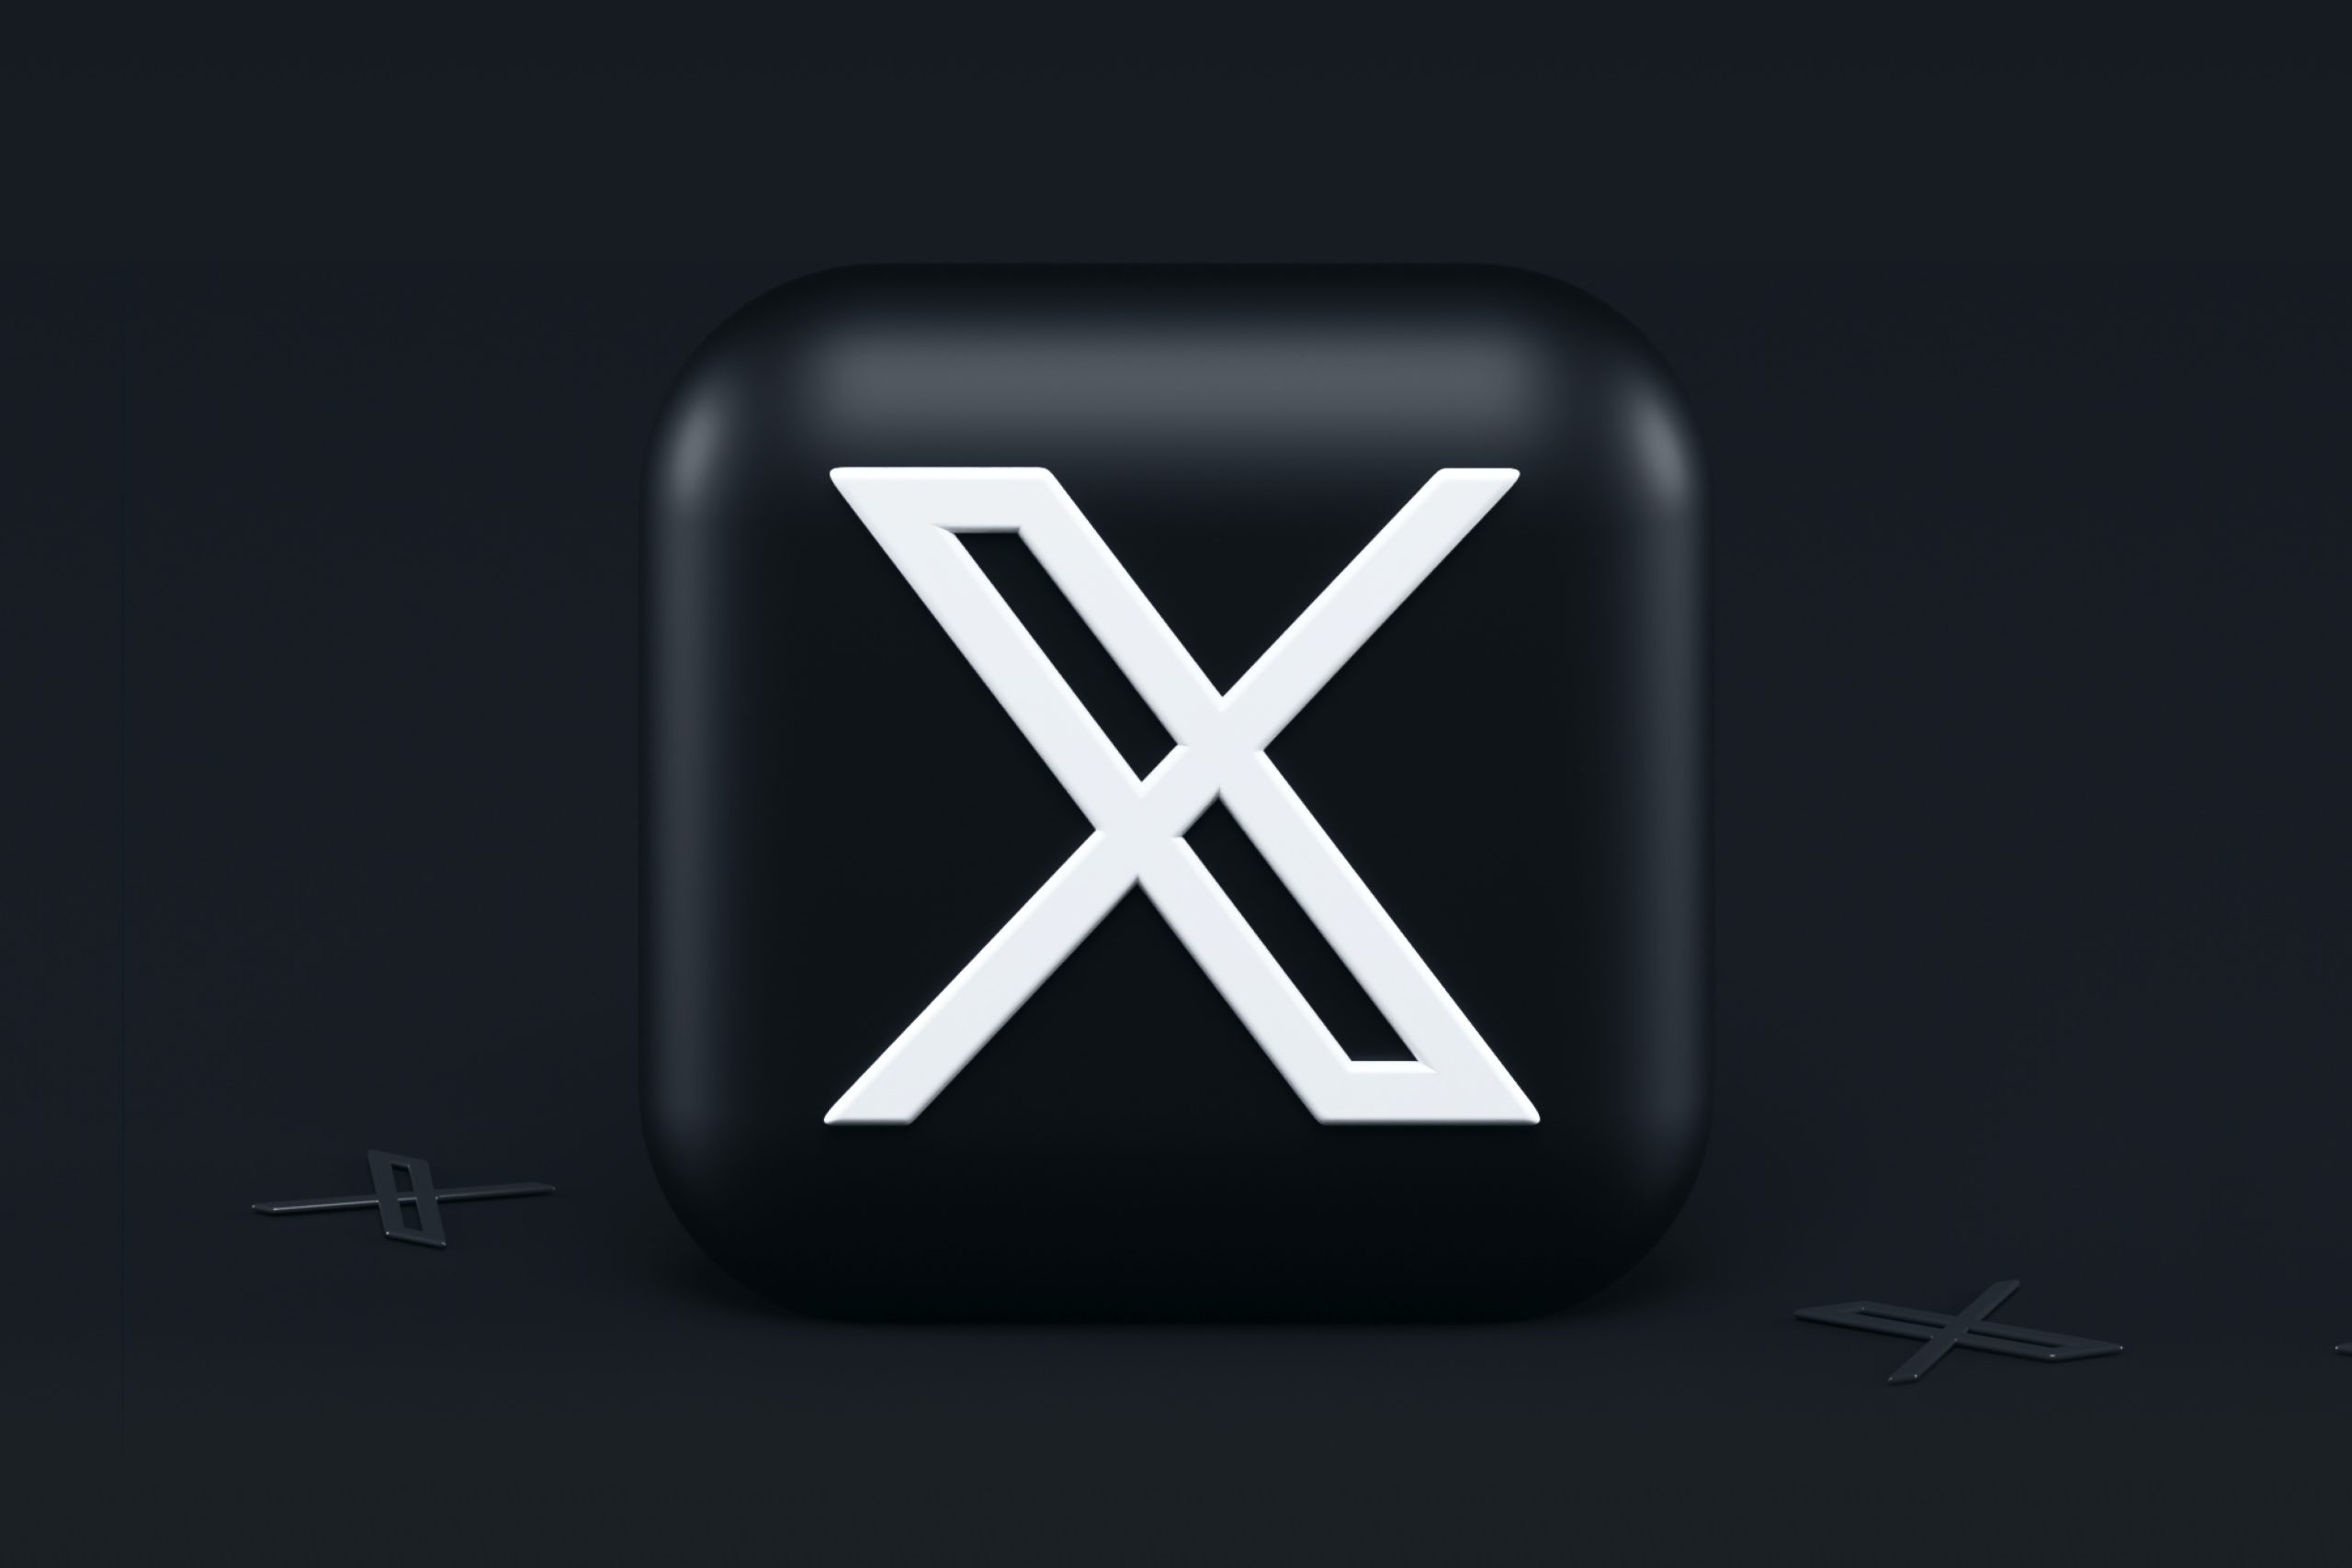 X Memperkenalkan Ciri Pengiklanan Jawatan Kosong Untuk Organisasi